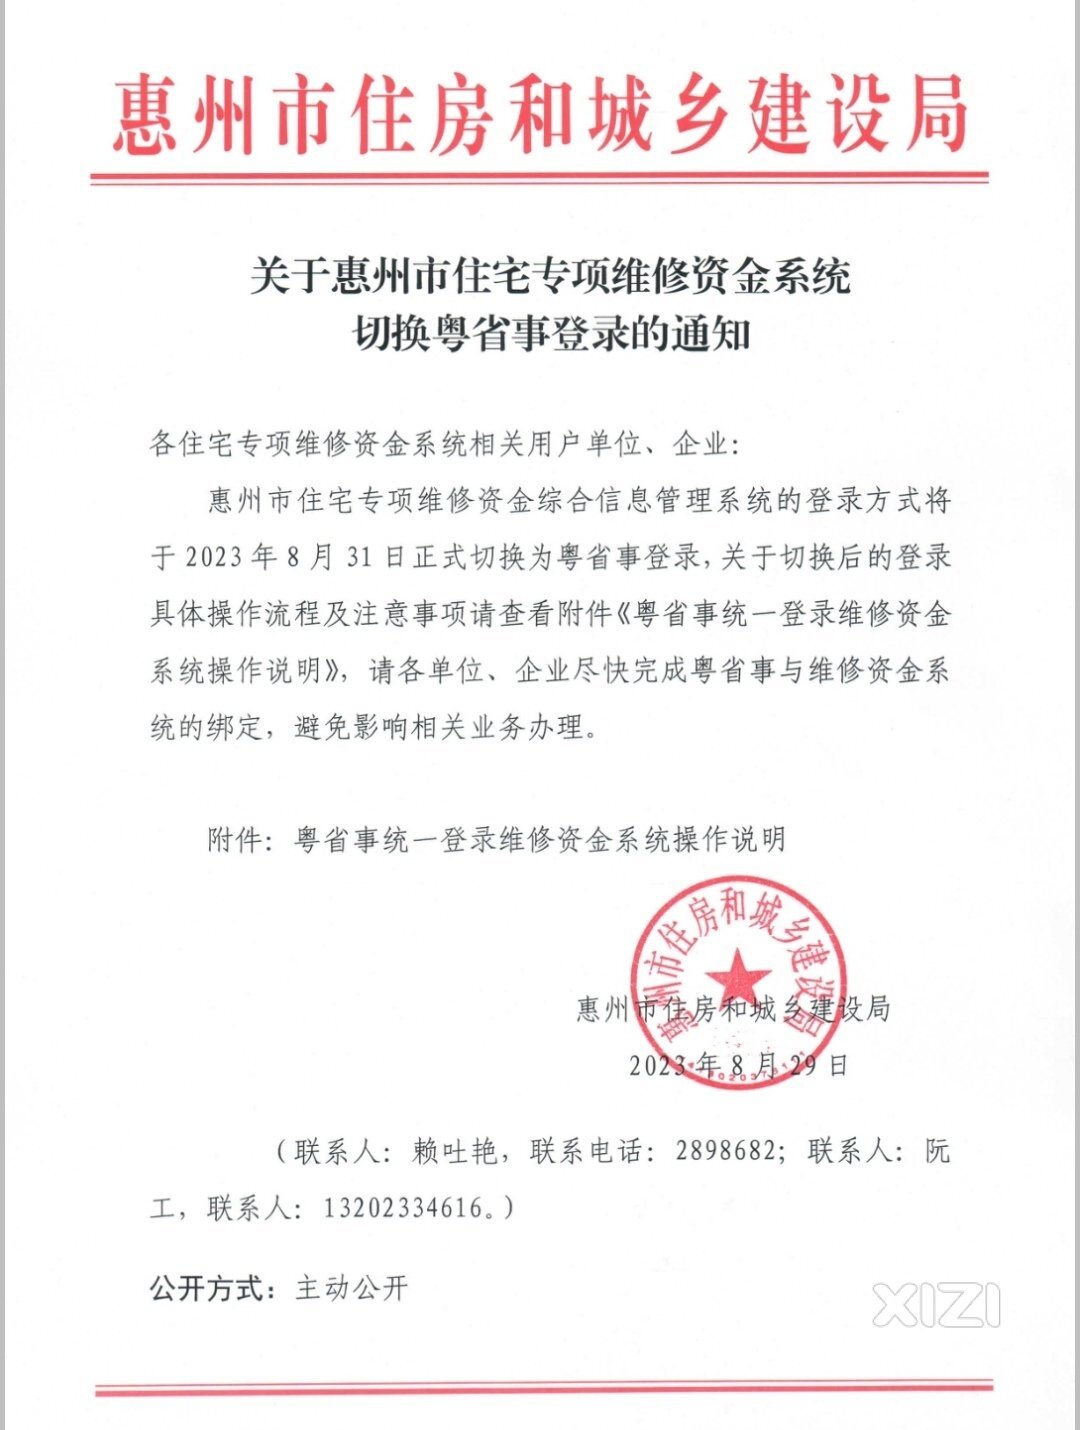 住宅维修资金系统登录方式于8月31日正式切换为粤省事登录